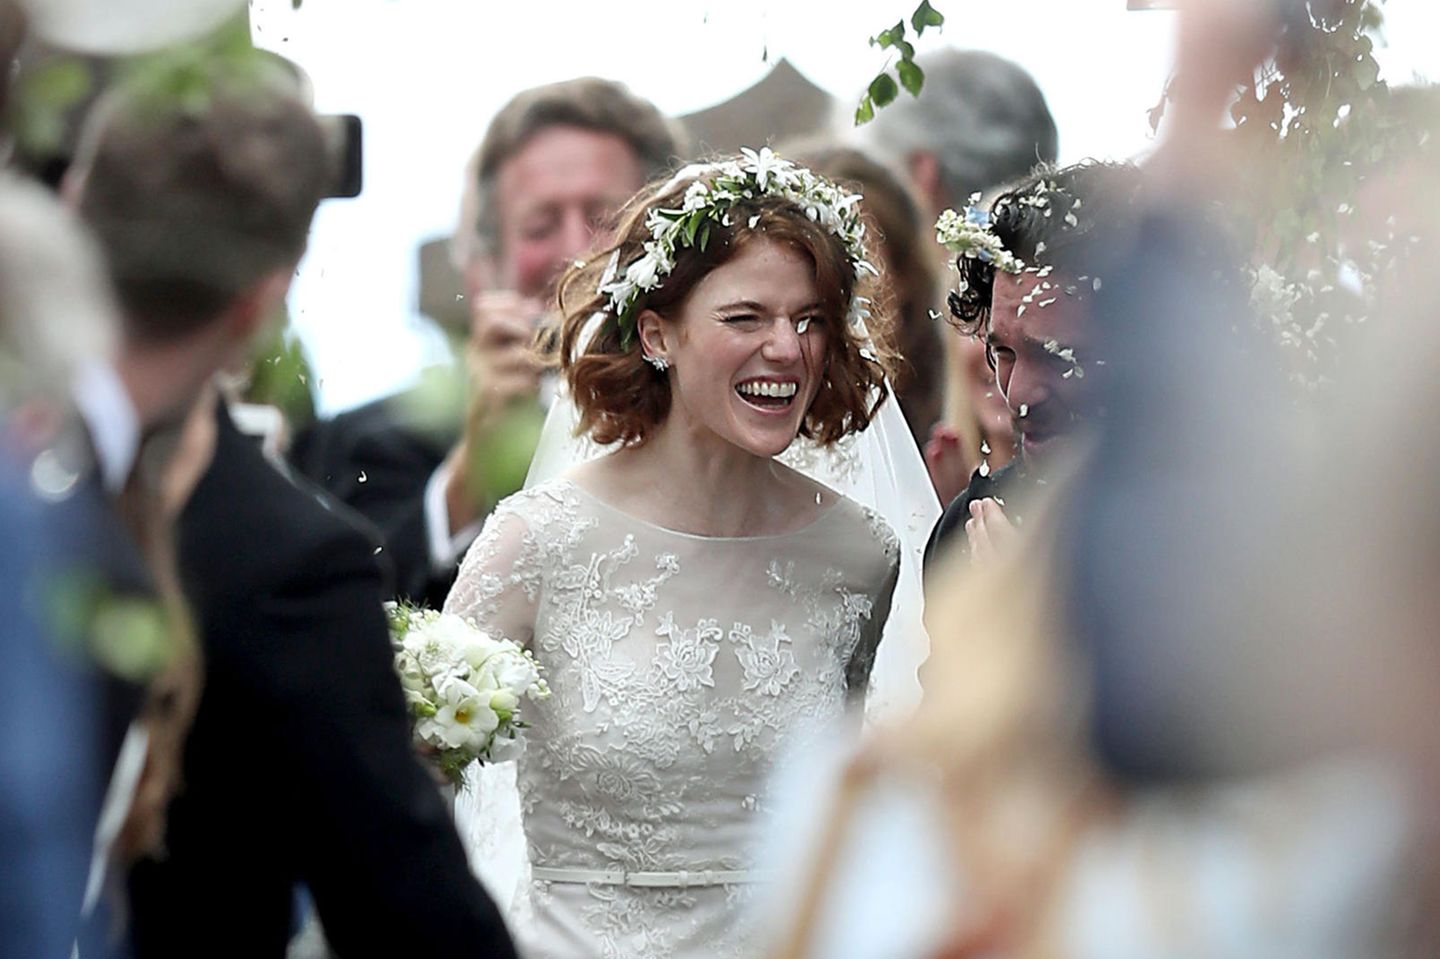 Game of Thrones-Hochzeit: Kit Harington "Jon Snow" heiratet Co-Star Rose Leslie in Großbritannien